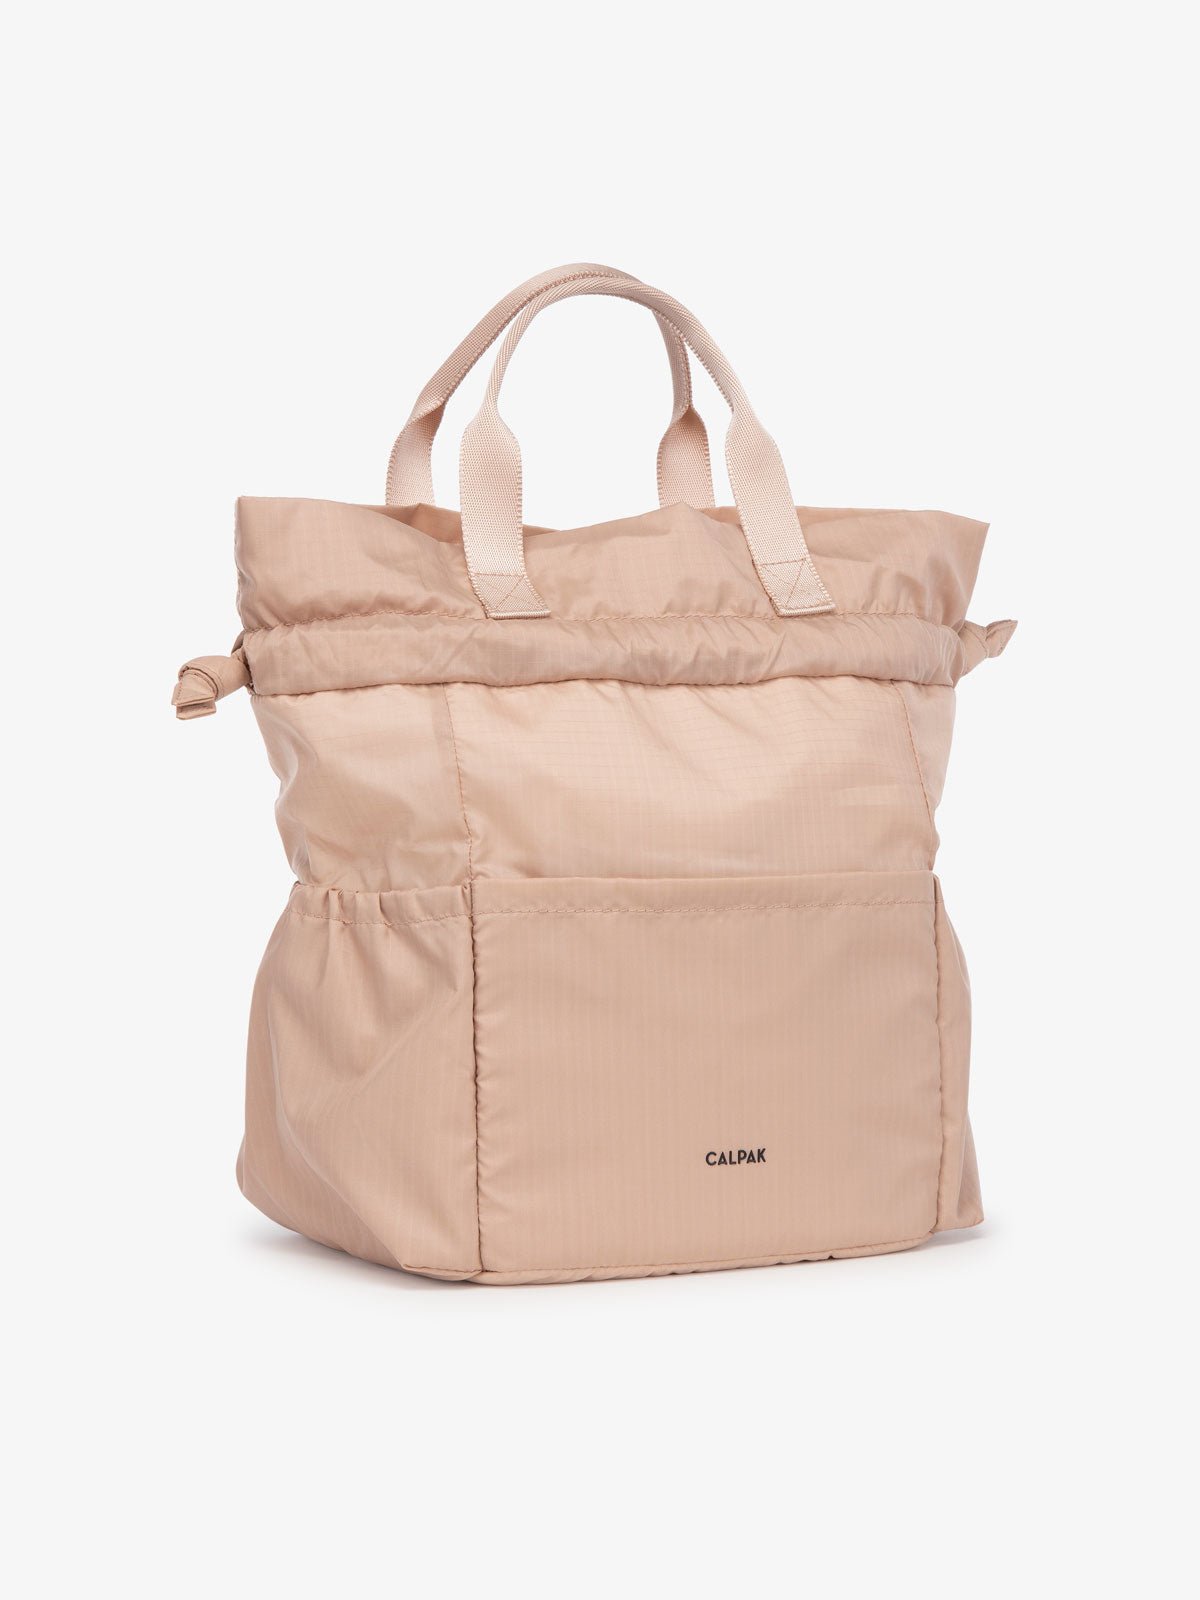 CALPAK pink lunch bag tote